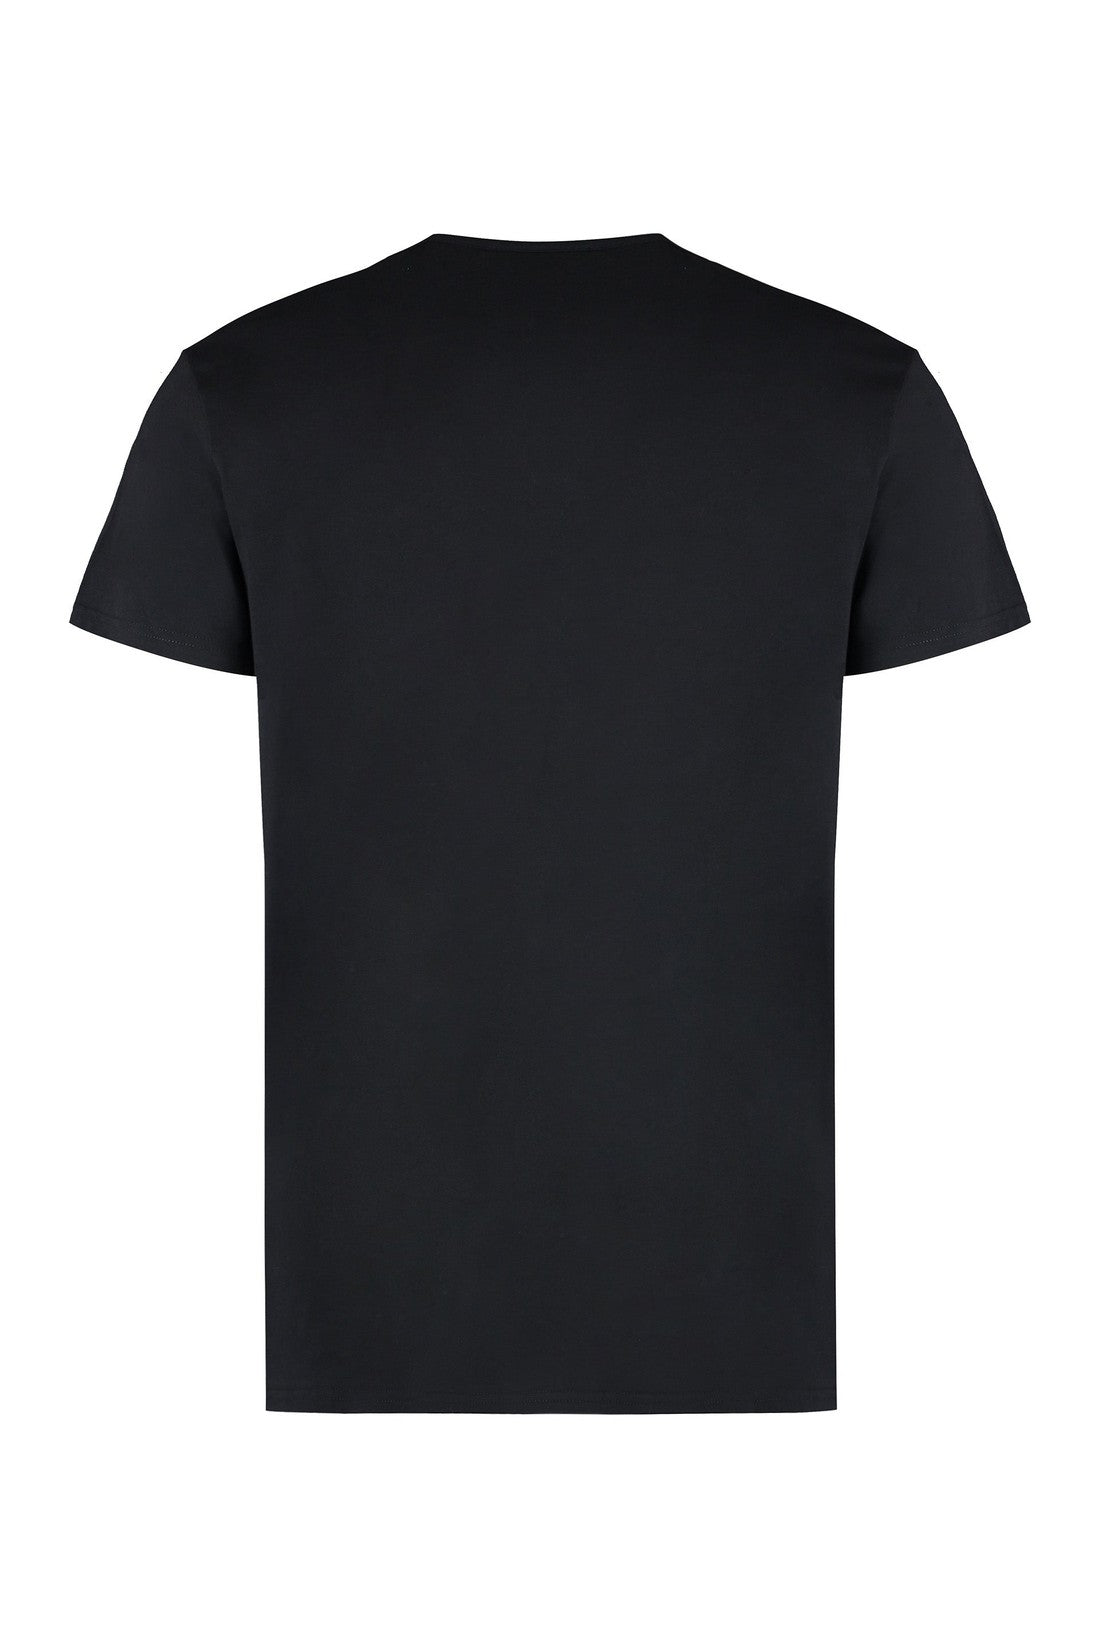 Versace-OUTLET-SALE-Cotton crew-neck T-shirt-ARCHIVIST